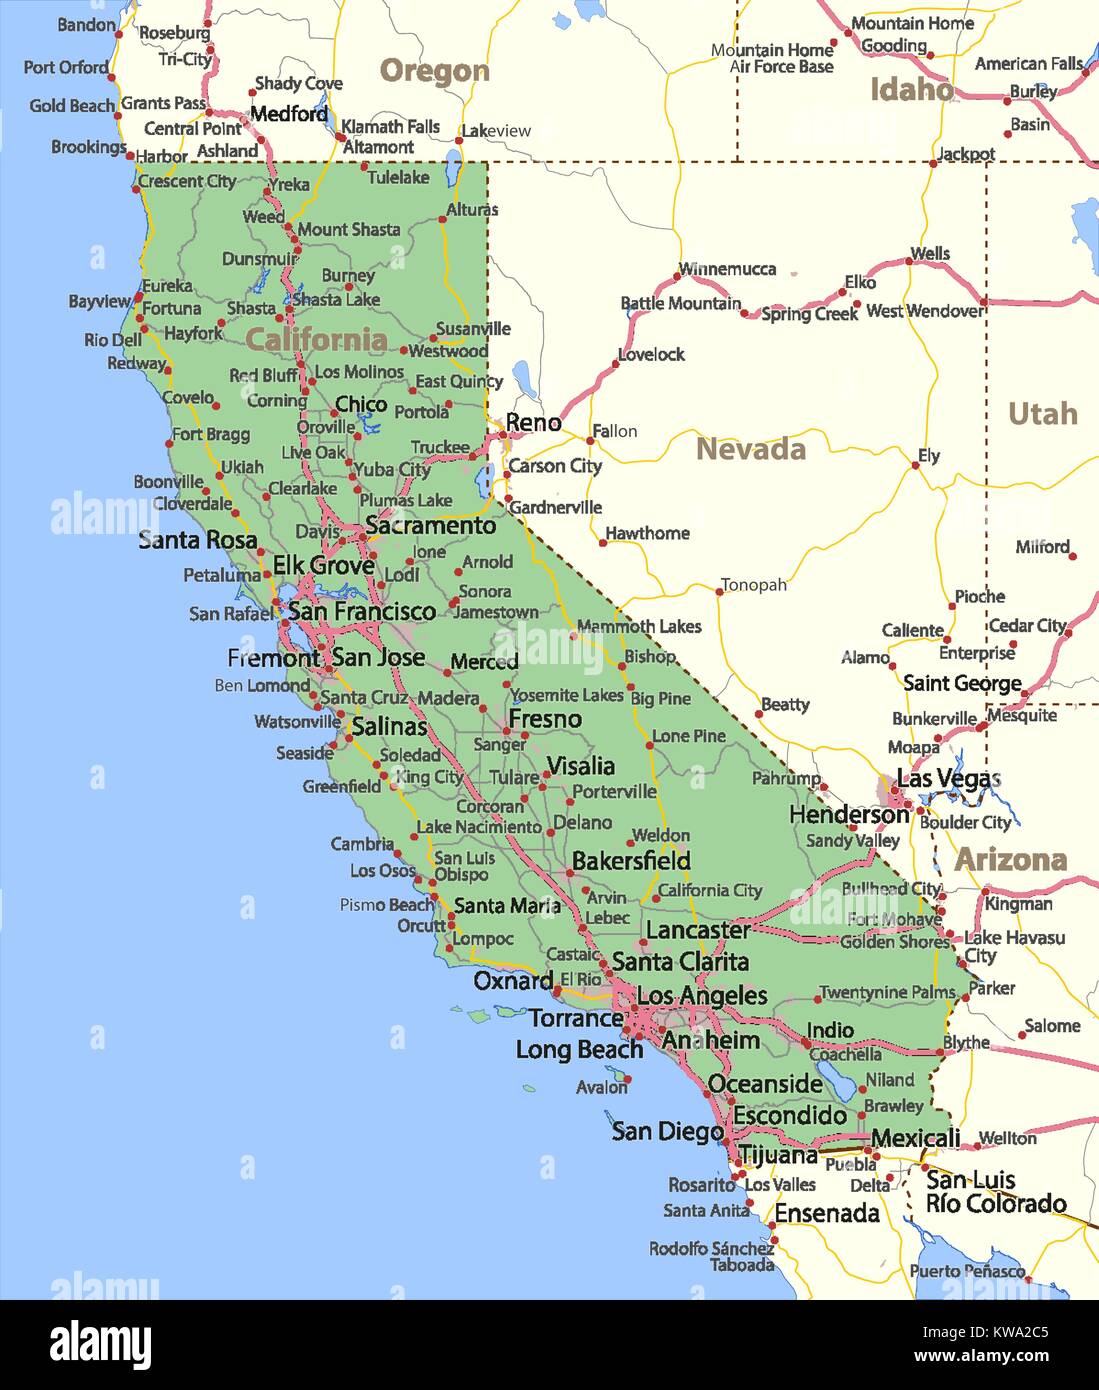 Mappa della California. Mostra i confini, zone urbane, nomi di località, strade e autostrade. Proiezione: proiezione di Mercatore. Illustrazione Vettoriale